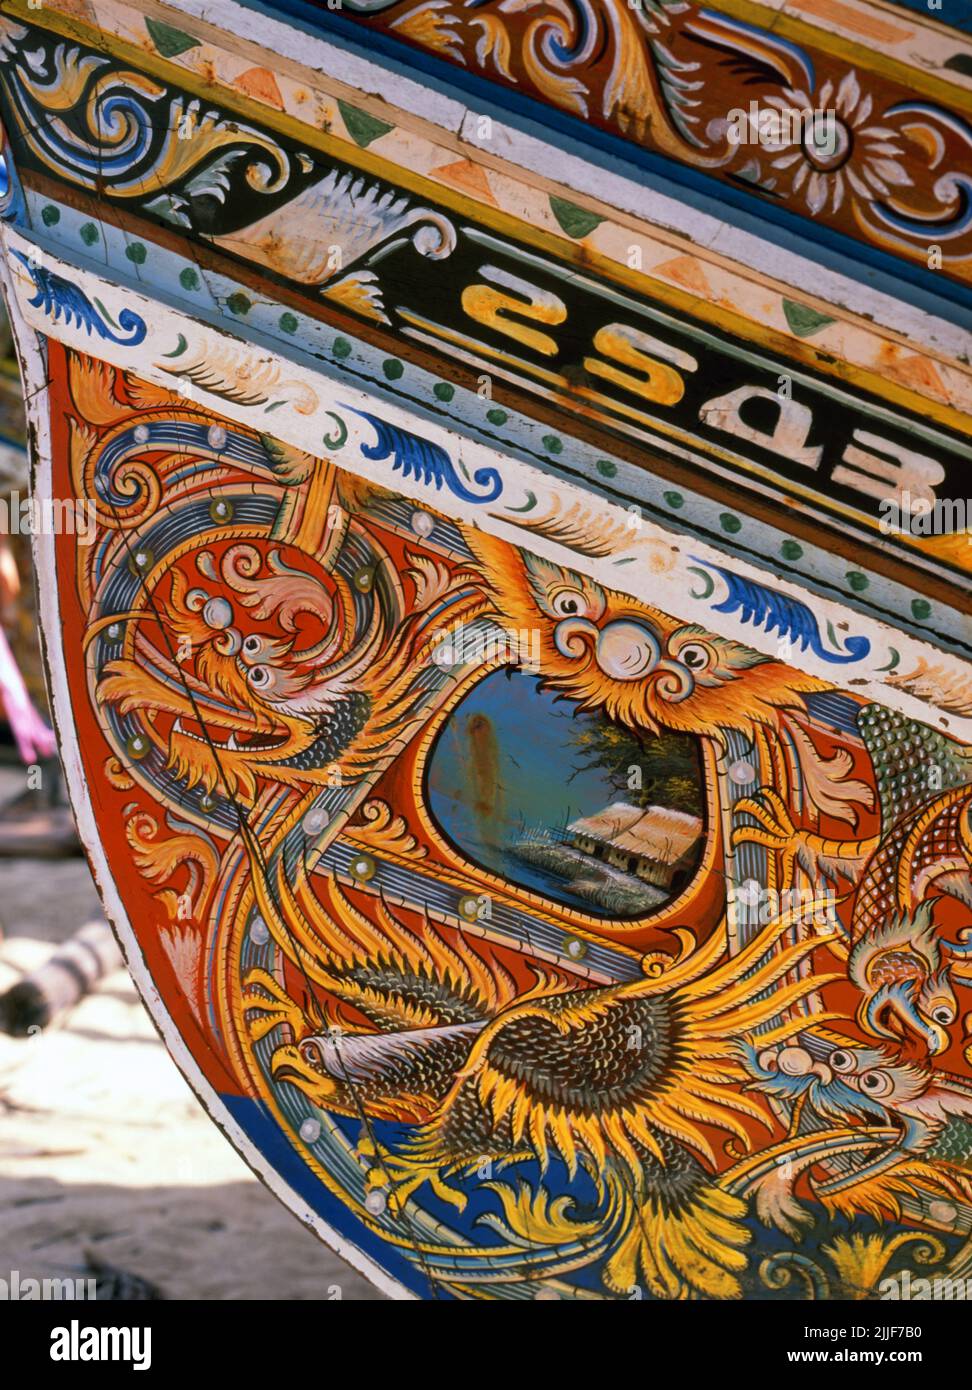 Thaïlande: Bateaux de pêche Korlae, Saiburi, sud de la Thaïlande. Le long de la côte est de la Thaïlande péninsulaire, de Ko Samui vers le sud, des bateaux de pêche colorés et peints ont été construits et décorés par des pêcheurs musulmans depuis des centaines d'années. Les meilleurs exemples de cette industrie en déclin proviennent des chantiers navals du district de Saiburi, dans la province de Pattani. Parmi les personnages représentés sur les dessins détaillés de la coque sont le lion de singha, l'oiseau corné de gagasura, le serpent de mer payanak, et l'oiseau garuda qui est à la fois le symbole du Royaume thaïlandais et le mont mythique du Dieu hindou Vishnu. Banque D'Images